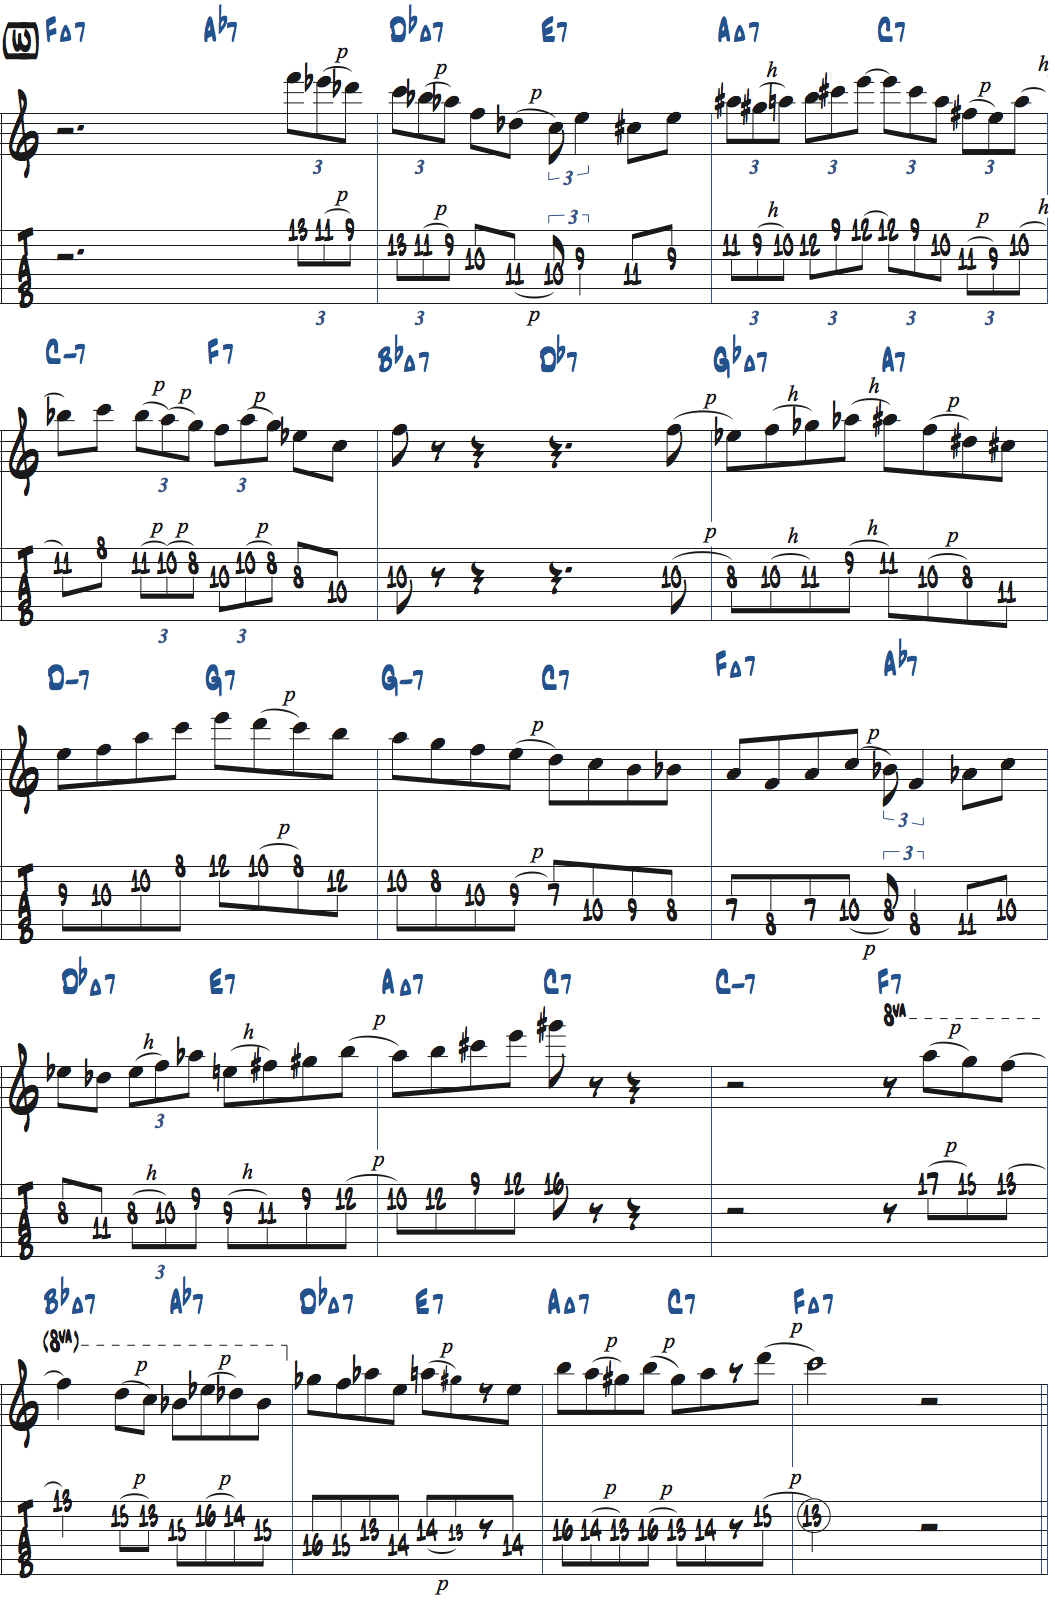 カート・ローゼンウィンケル「26-2」アドリブ7コラース目タブ譜付きギタースコア楽譜ページ1